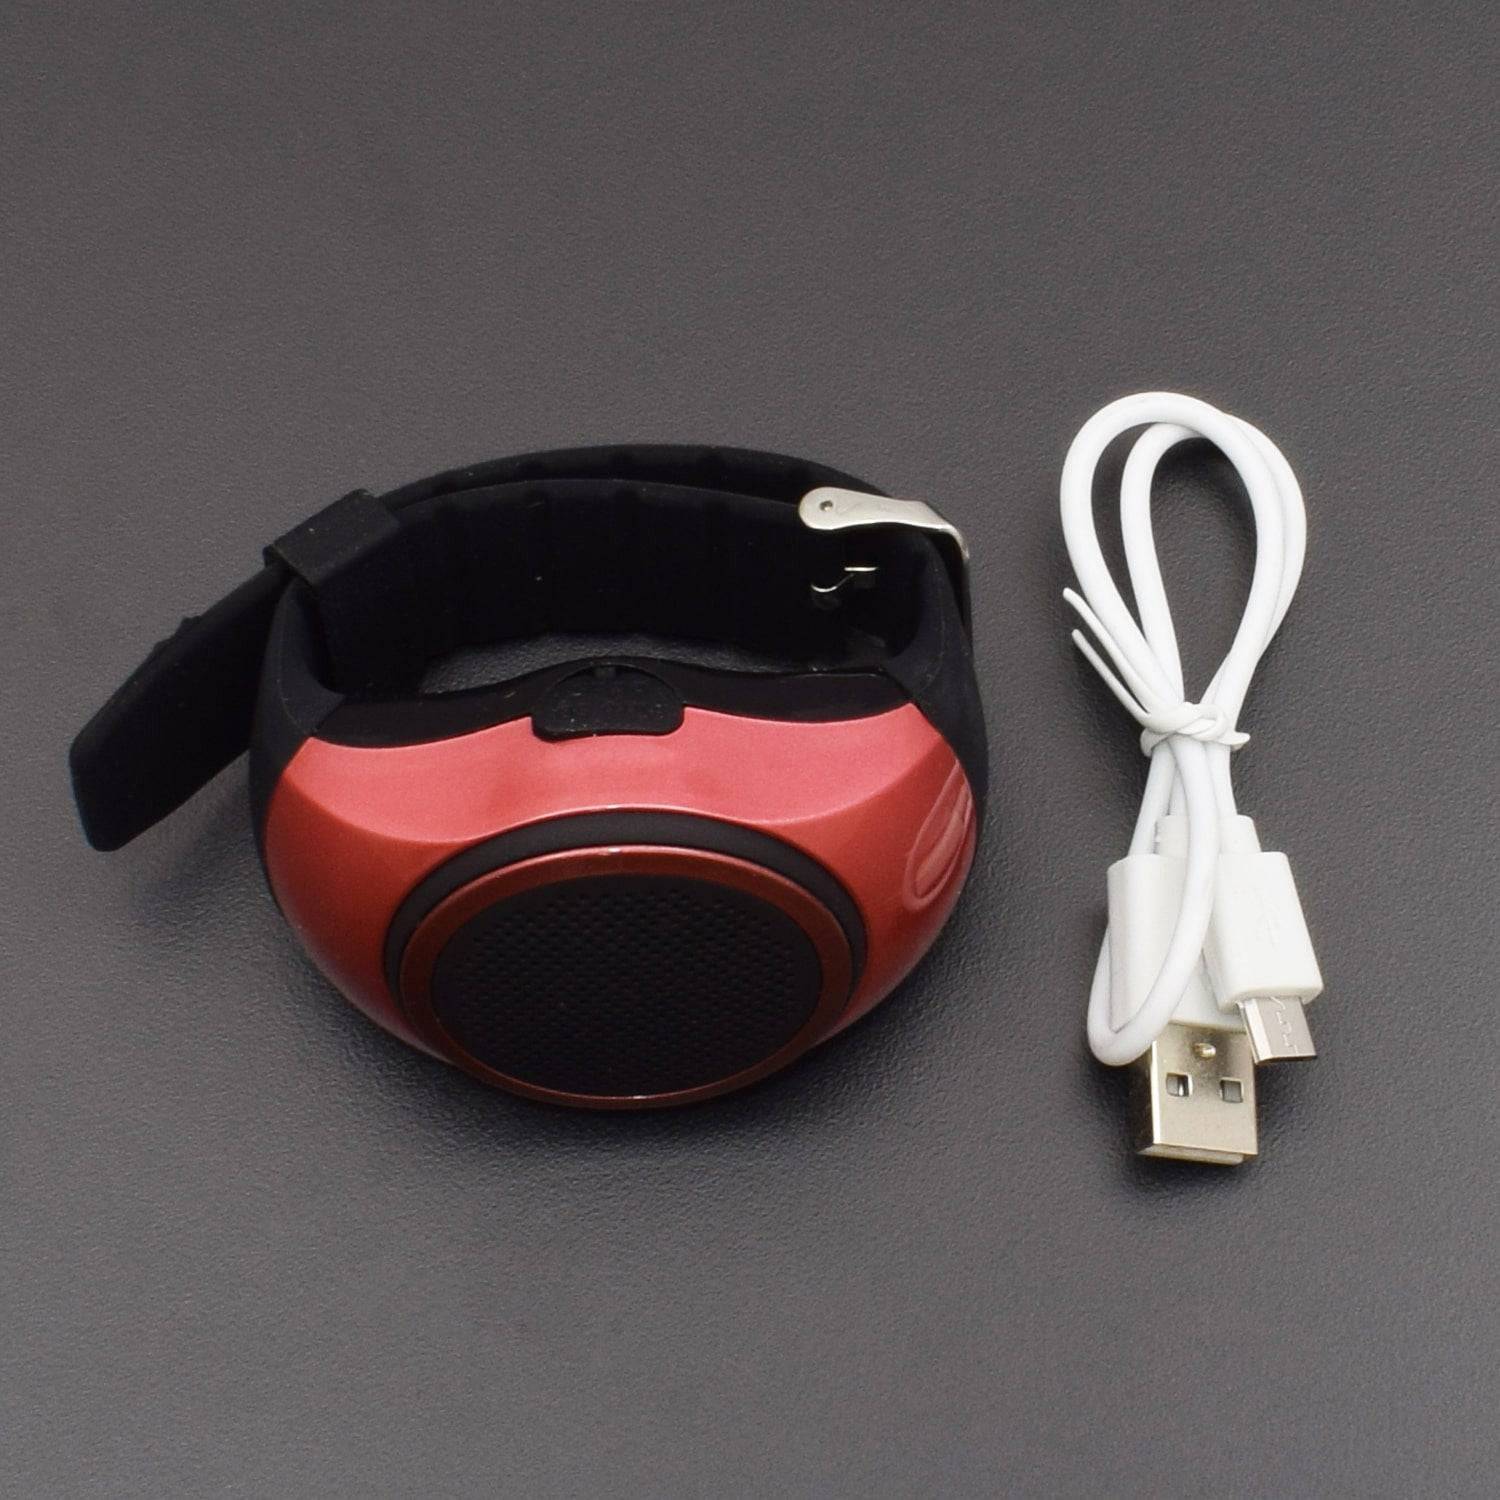 Smart Watch Wireless Earphones Fitness Tracker 2 in 1 Bracelet with Earbuds  | eBay